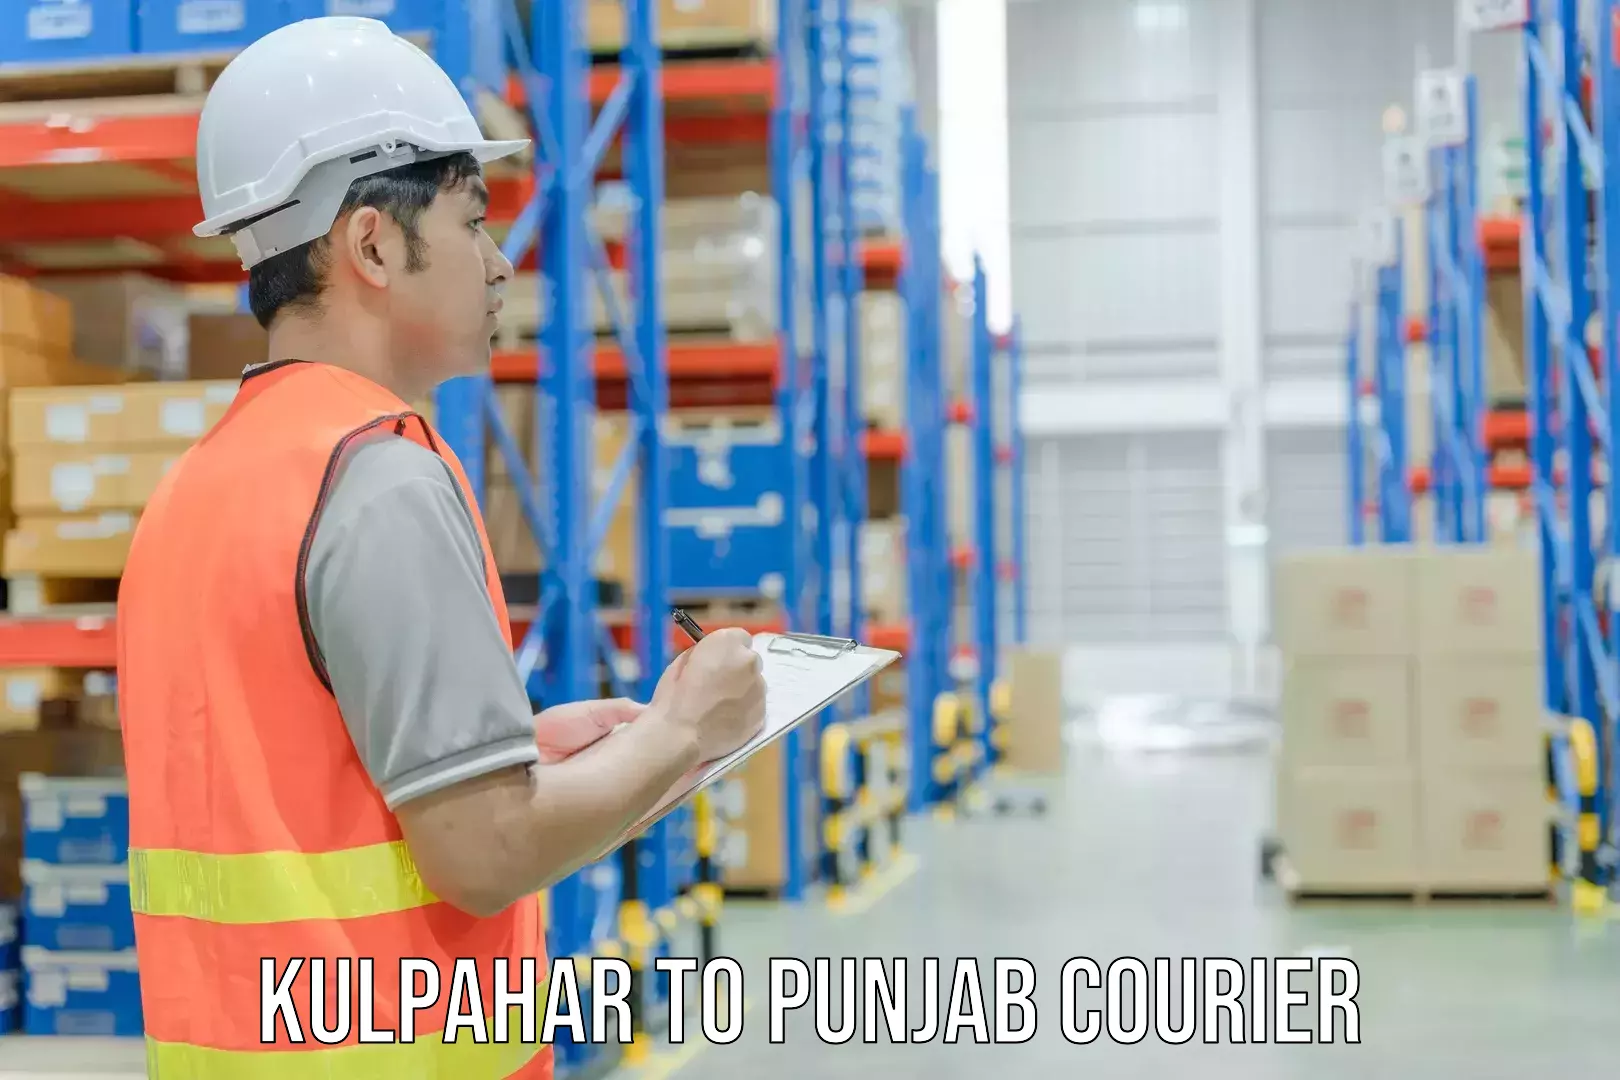 24/7 courier service Kulpahar to Malerkotla